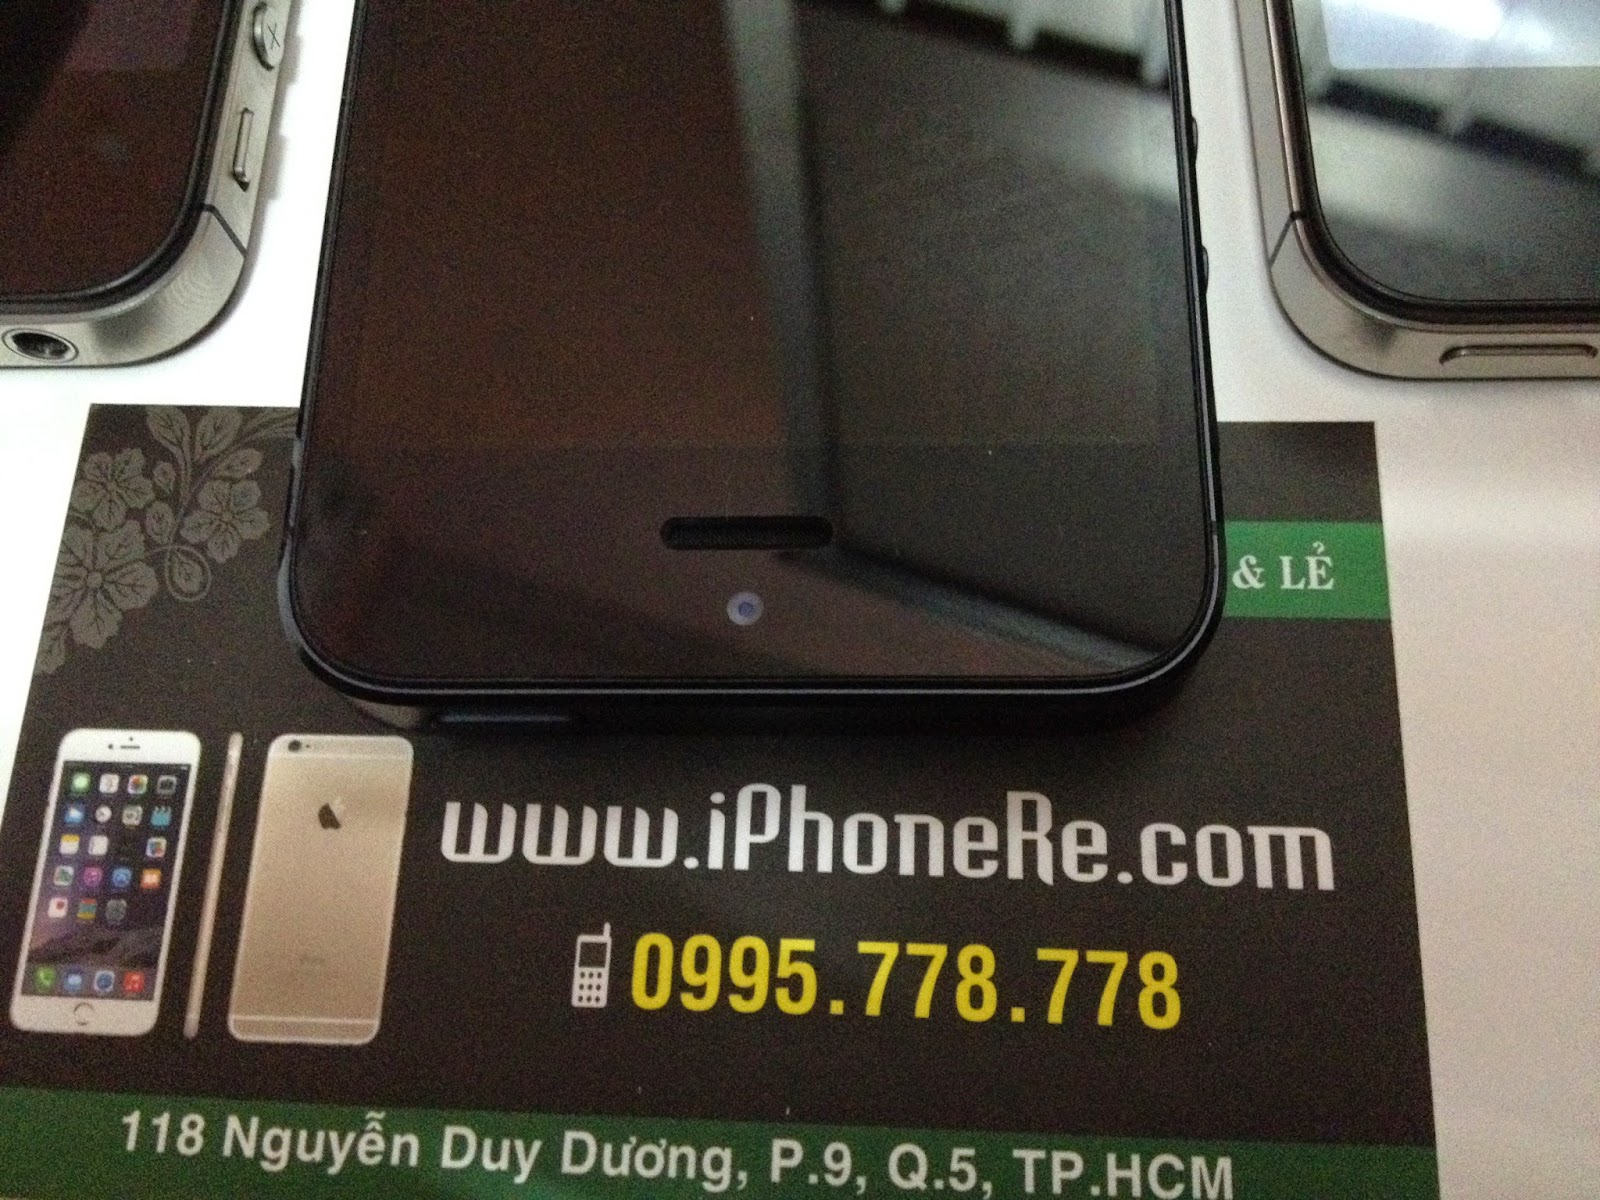 iPhoneRe.com -> IP5 16GB Black World Mới 99% -> hàng rất đẹp -> xem sẽ thích ngay - 2